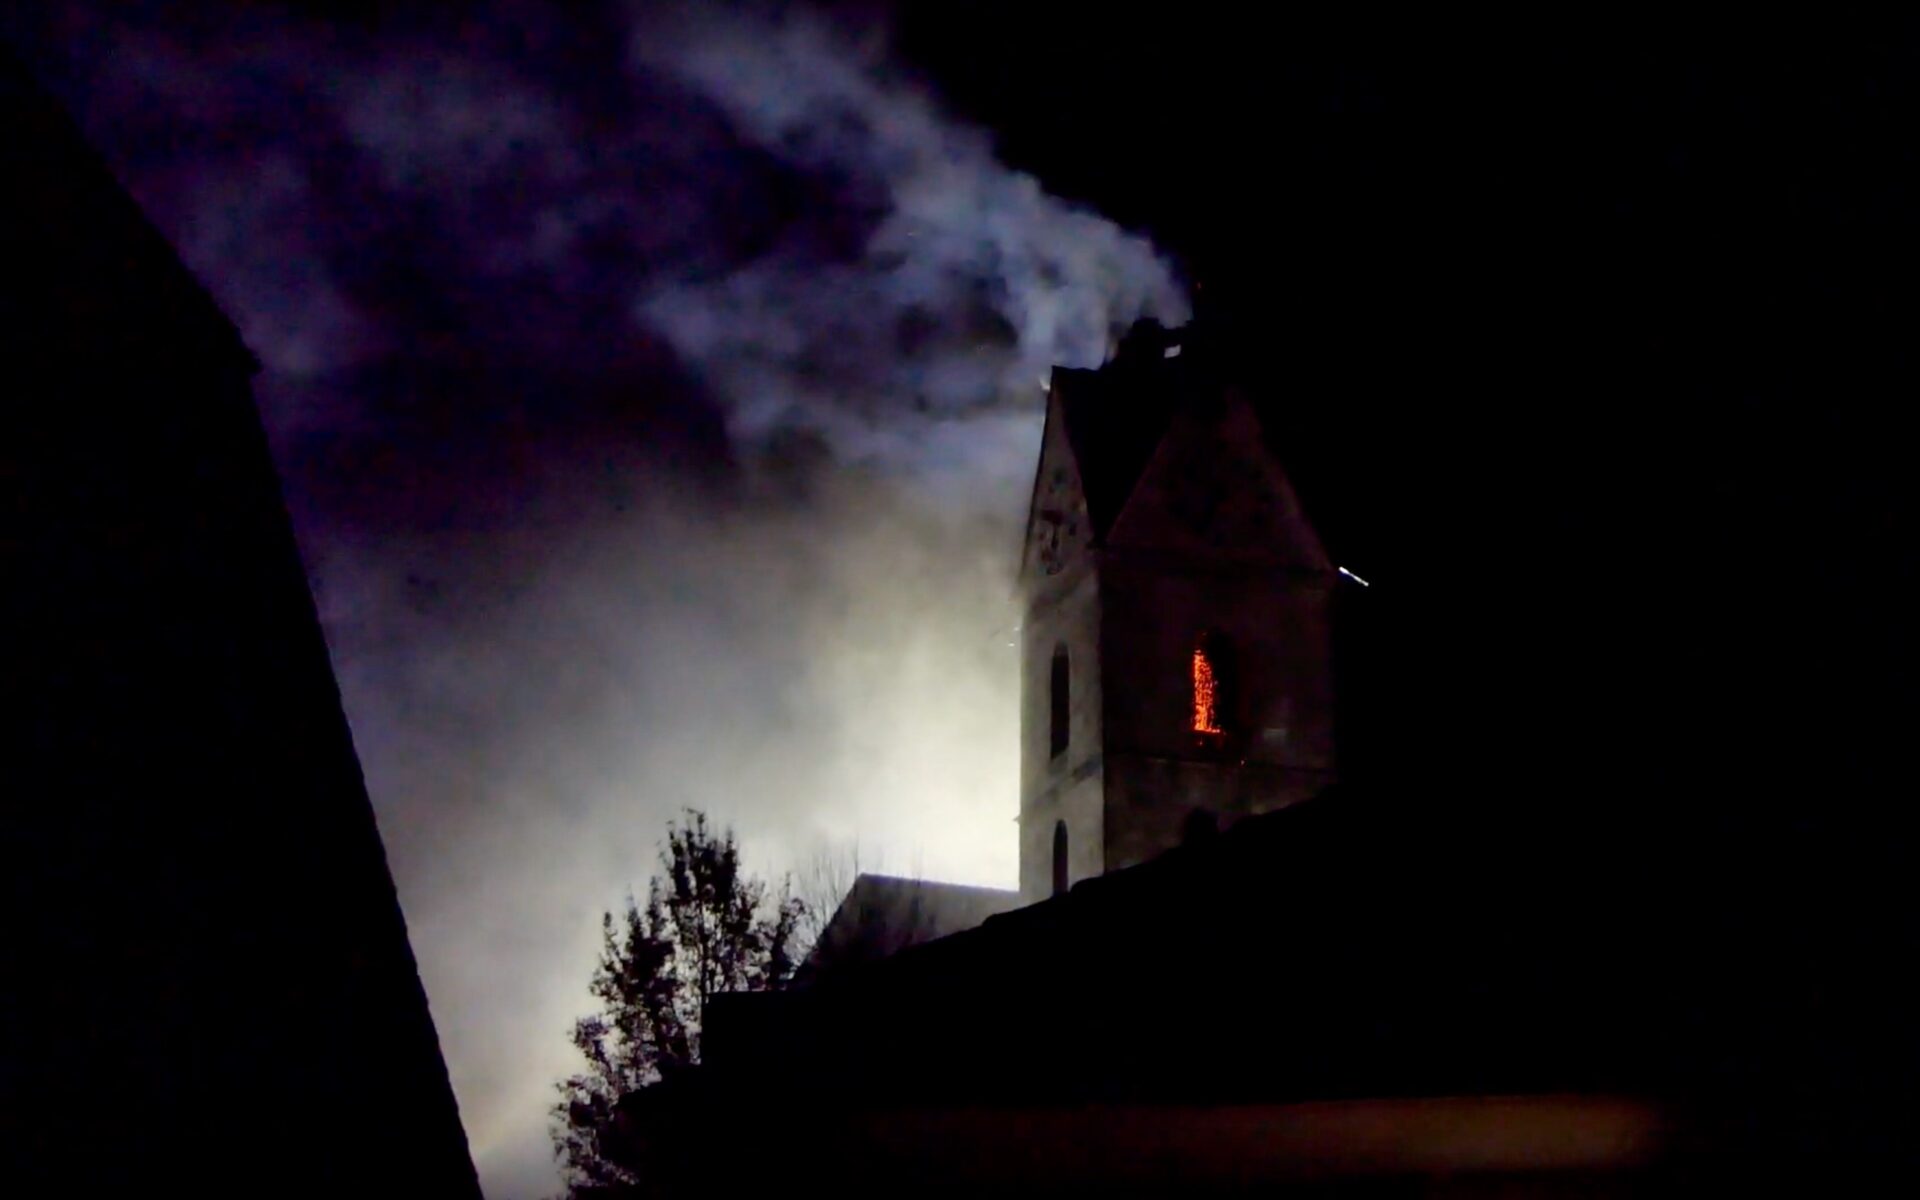 Suite à l'incendie du 24 décembre, une partie du clocher de l'église de Herzogenbuchsee, dans le canton de Berne, s'est effondrée et a fait un trou dans le toit de la nef. | © Youtube, capture d'écran.